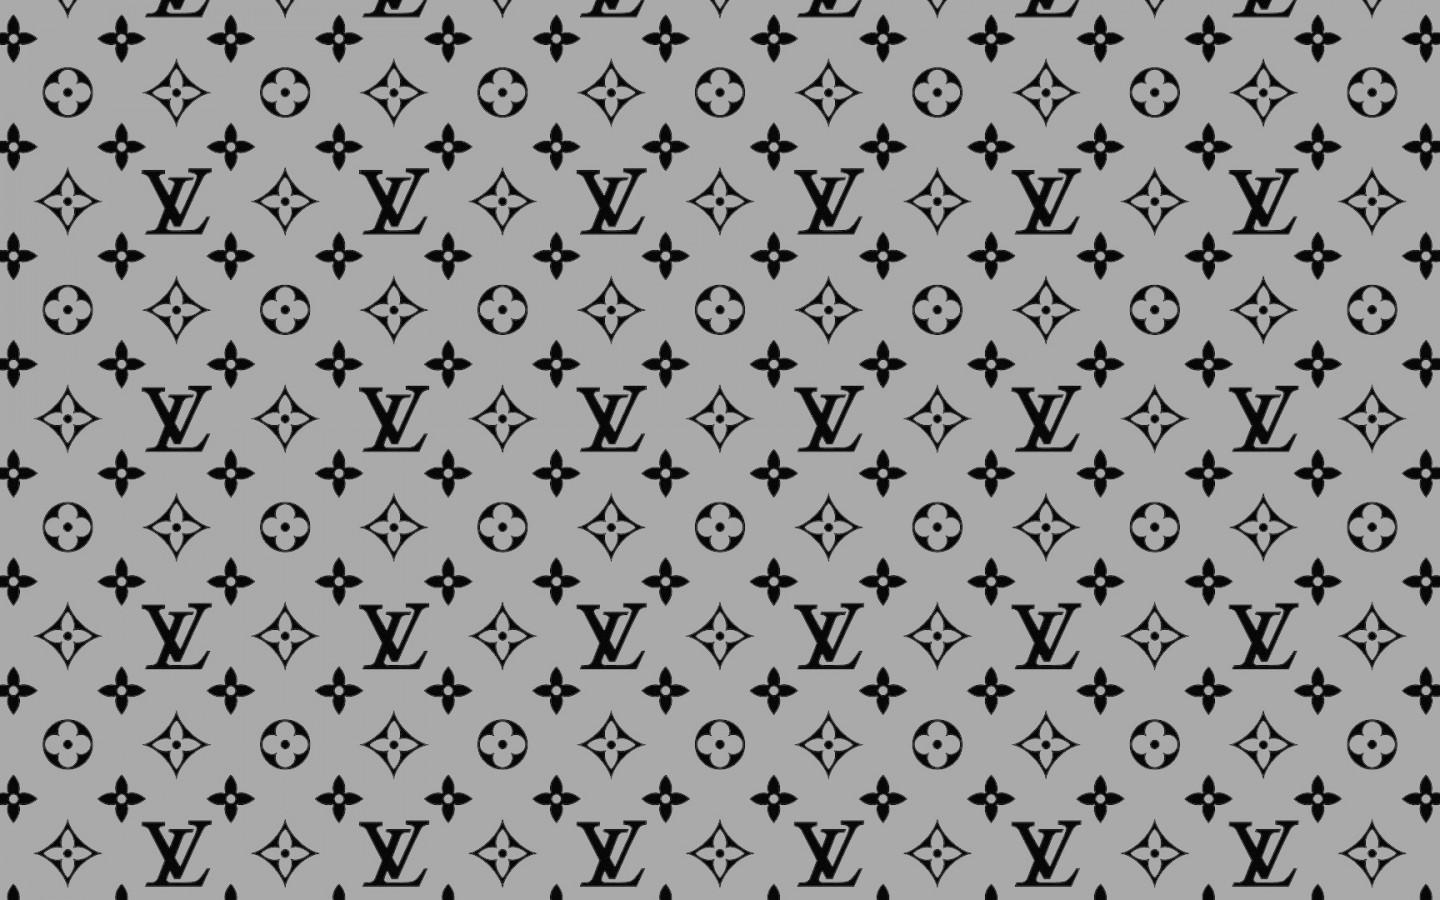 Louis Vuitton In Black White Stripes Background HD Louis Vuitton Wallpapers, HD Wallpapers